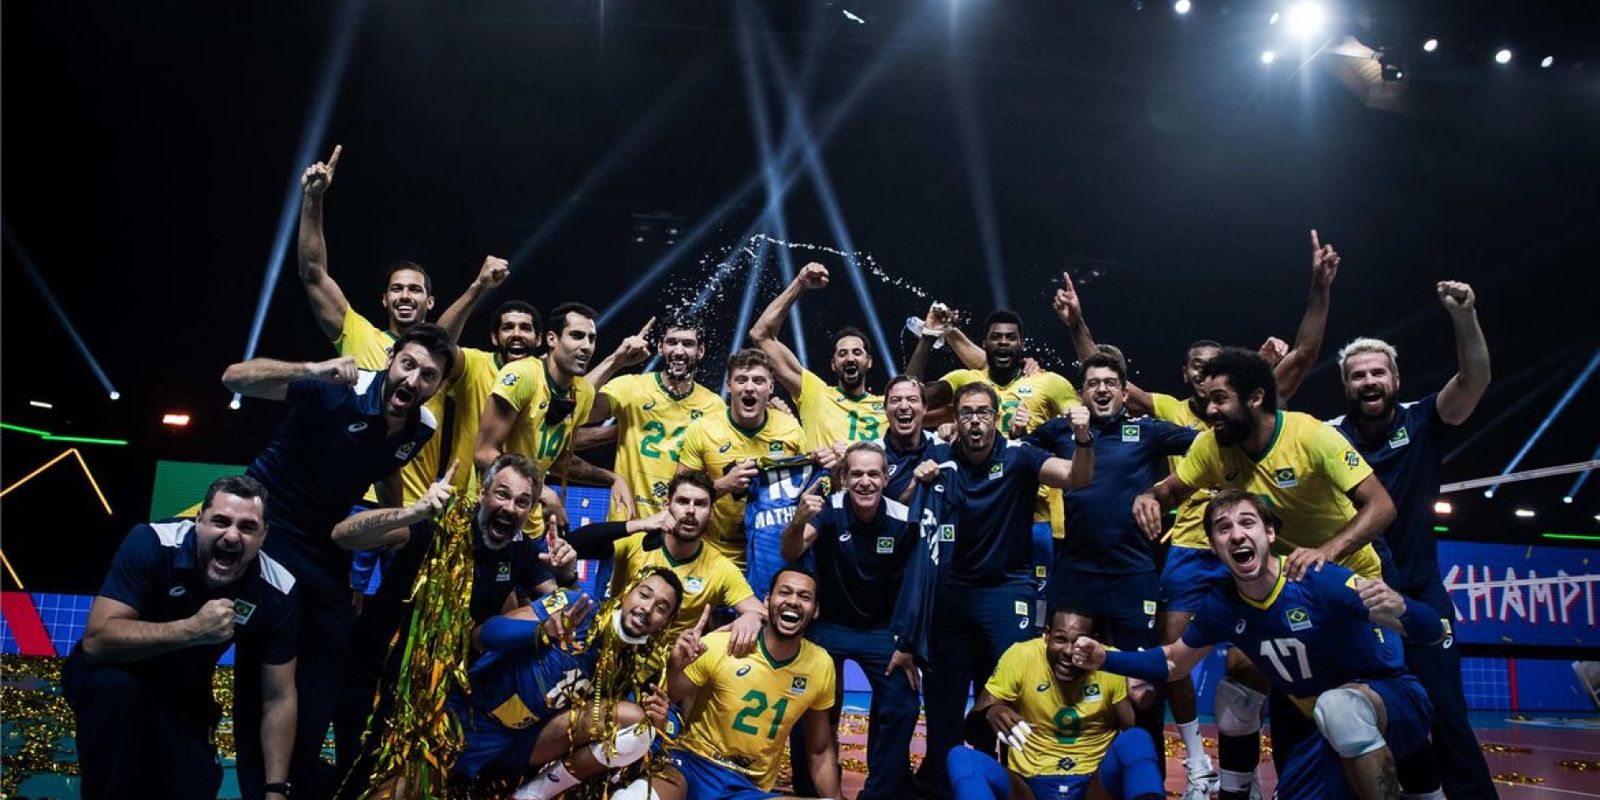 Les équipes brésiliennes rencontrent des adversaires dans la Volleyball Nations League